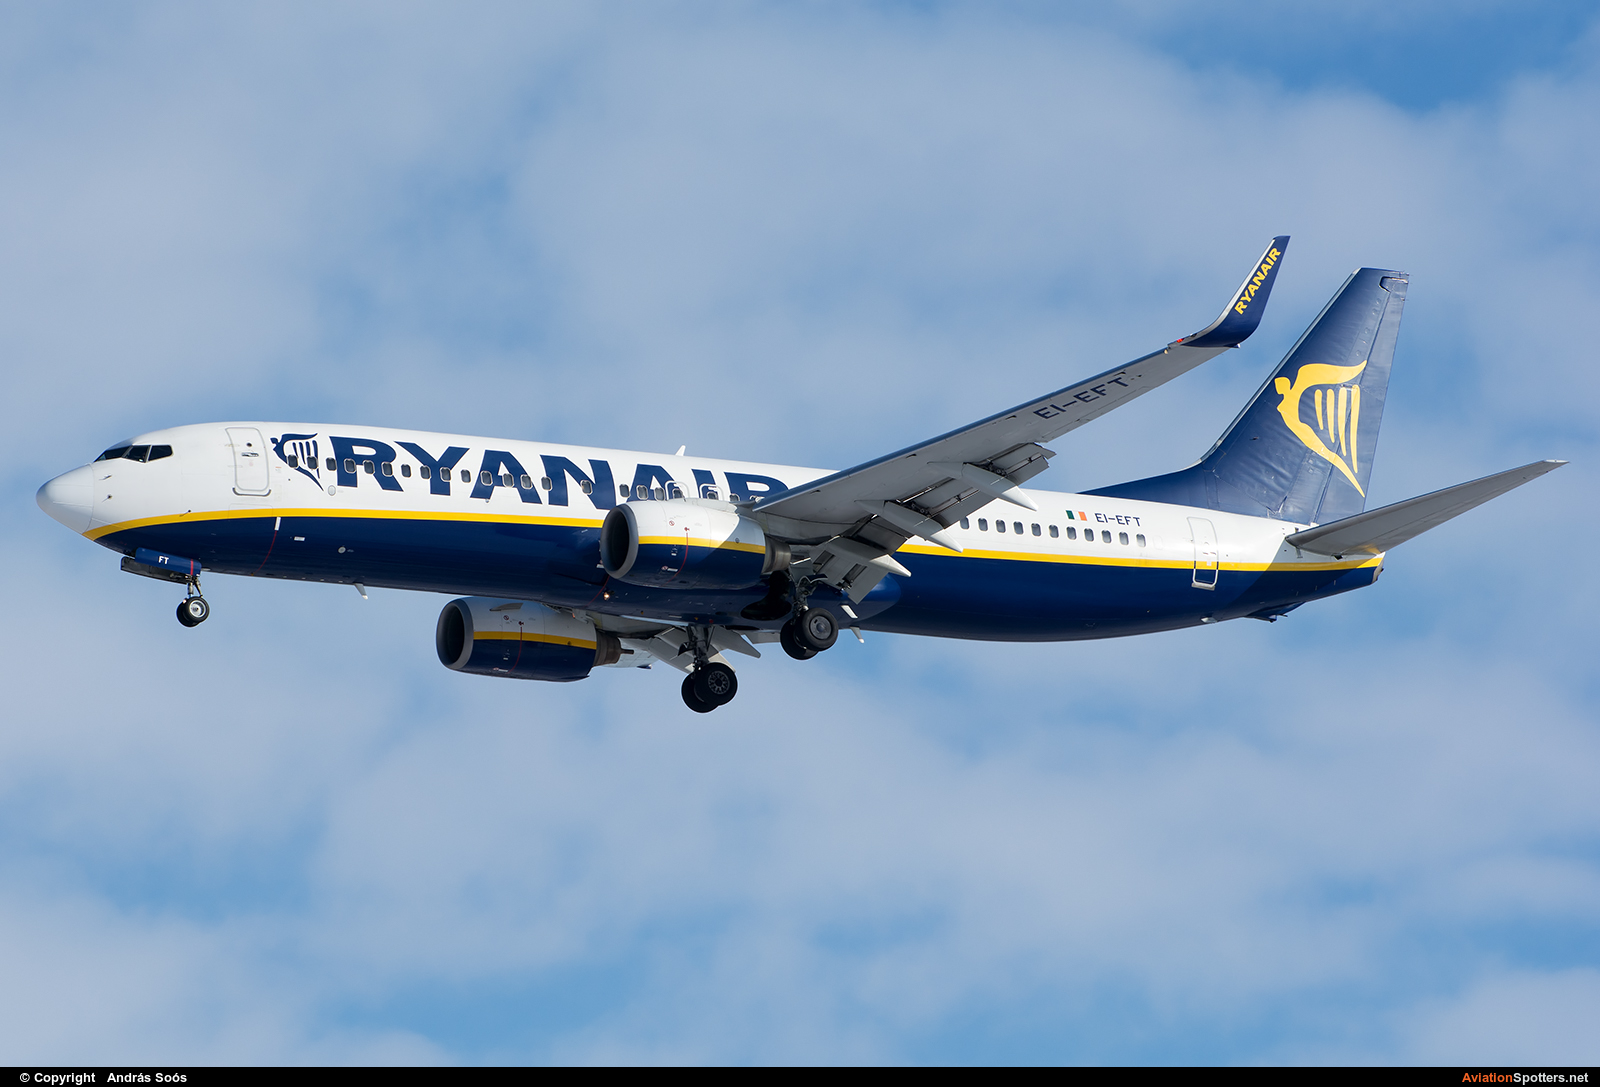 Ryanair  -  737-800  (EI-EFT) By András Soós (sas1965)